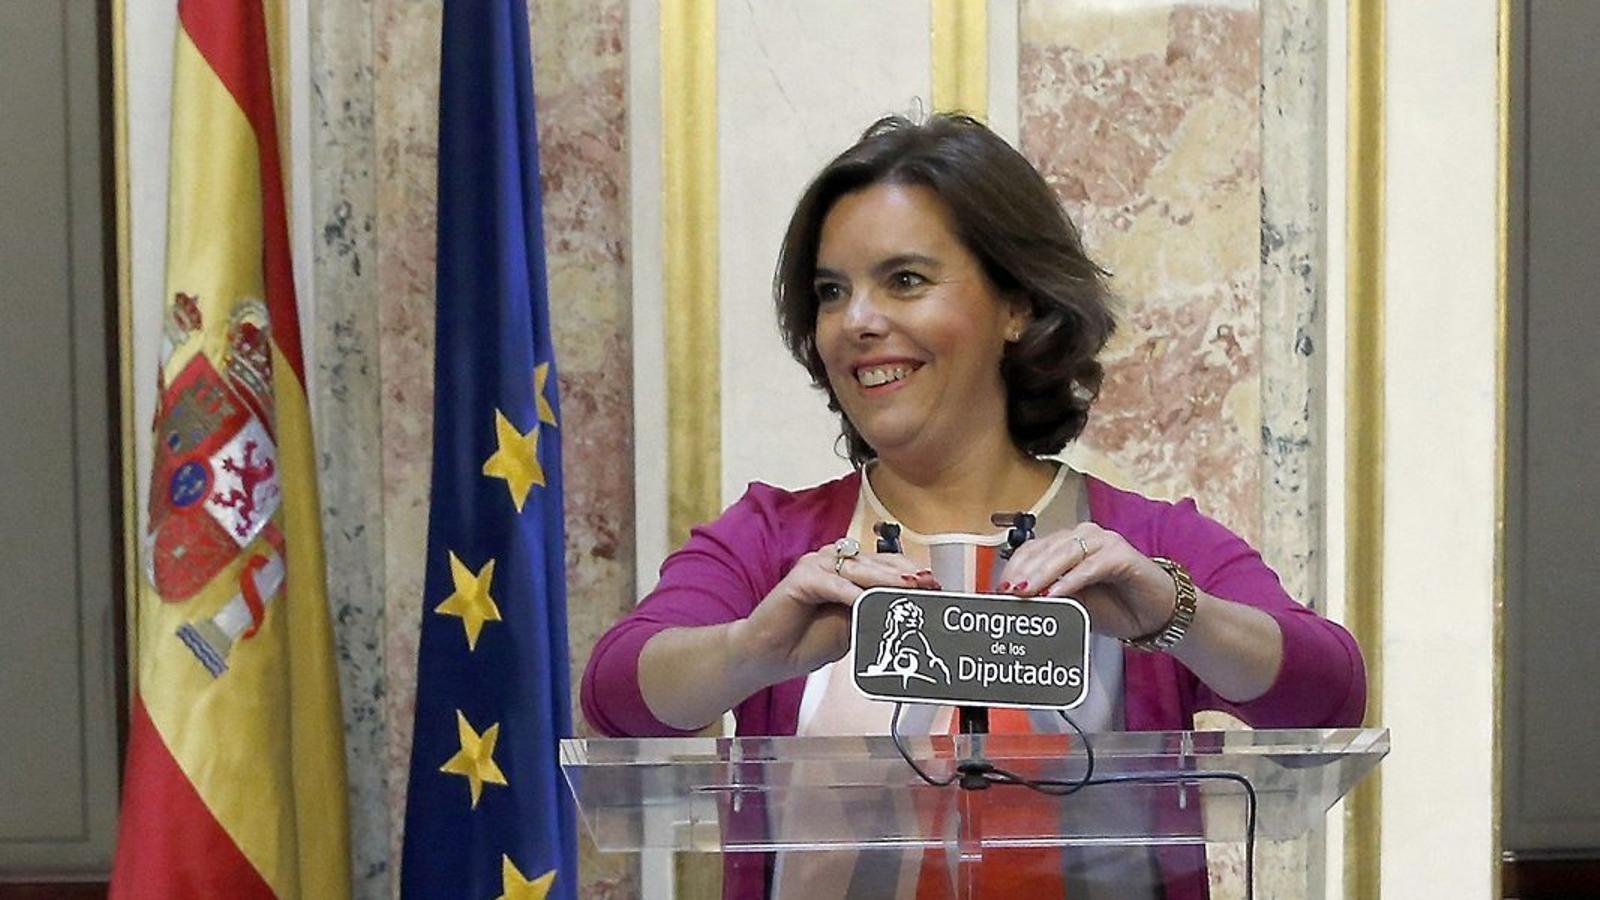 La vicepresidenta del govern espanyol, Soraya Sáenz de Santamaría, va comparèixer ahir al Congrés.